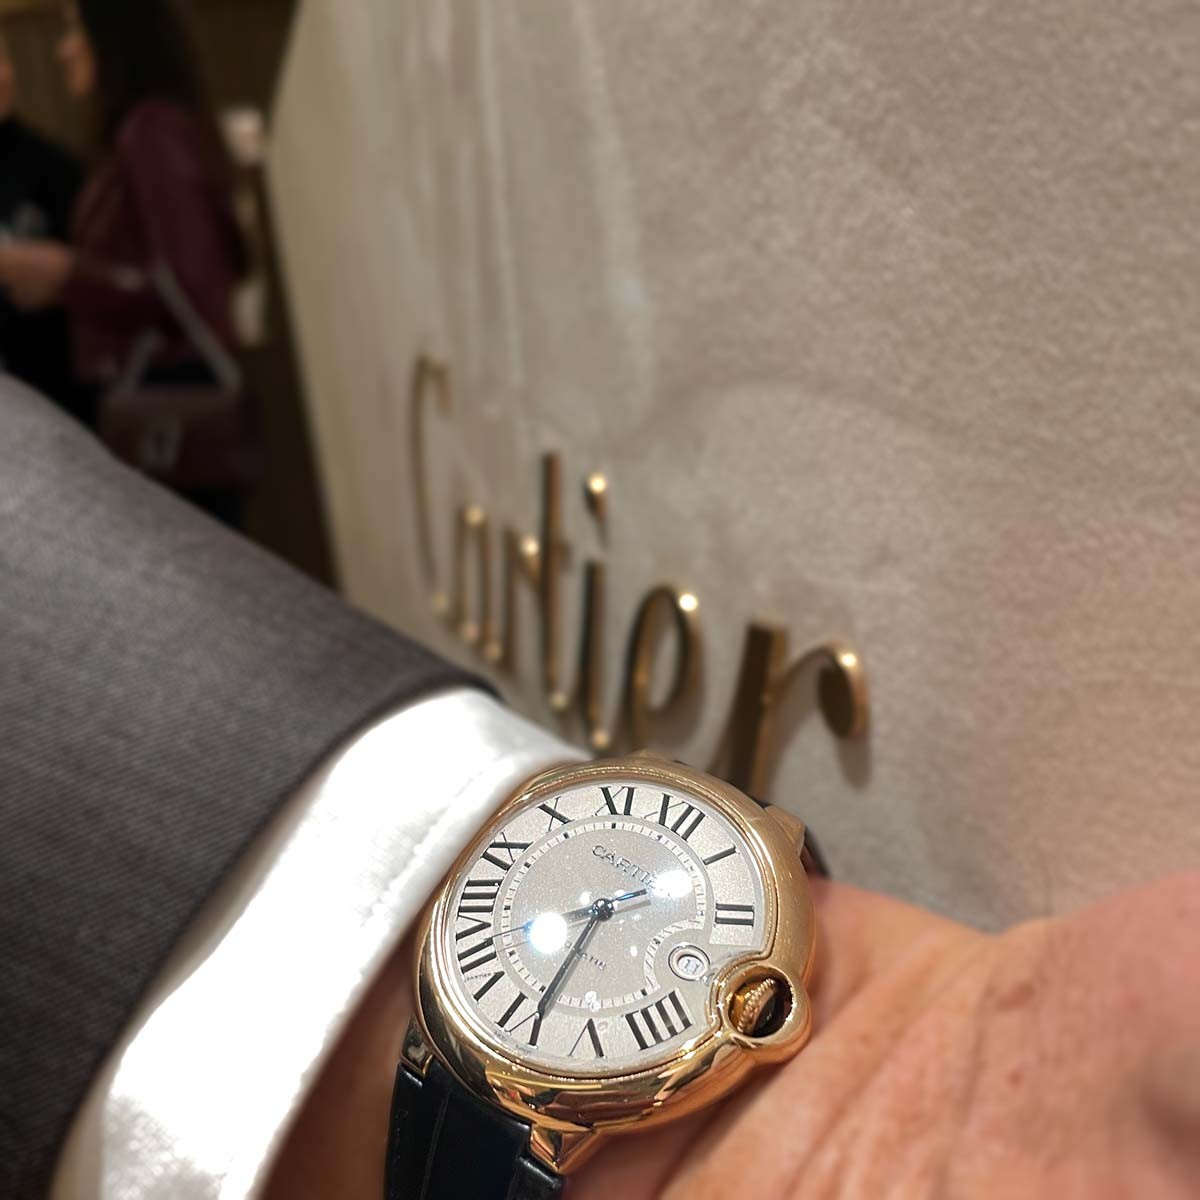 Cartier Rare Watches Exhibition